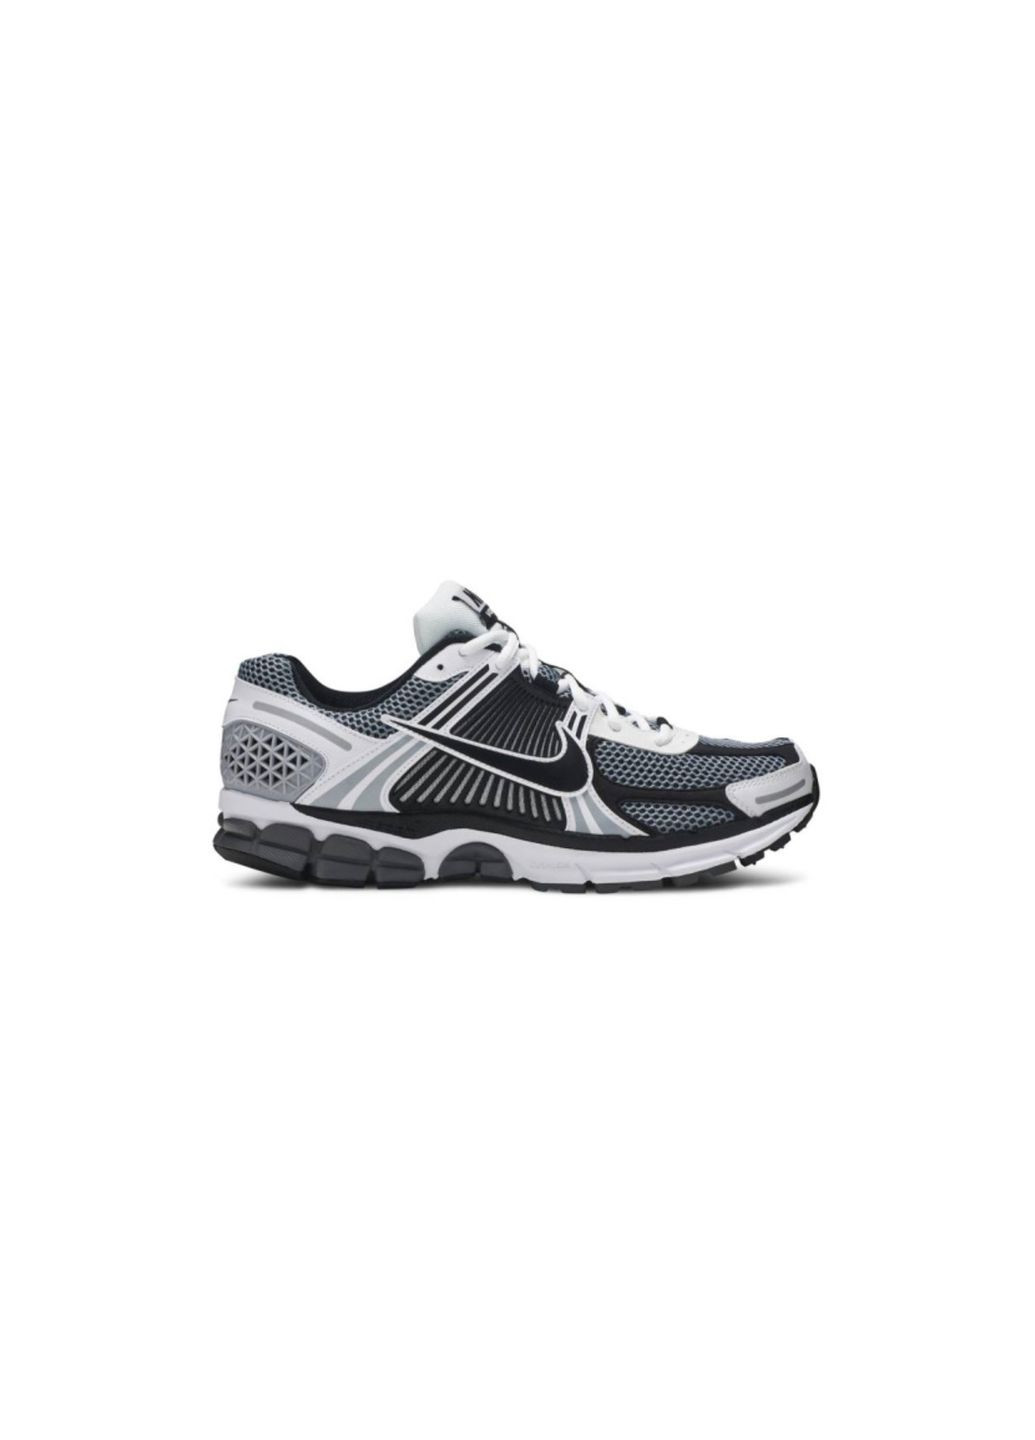 Комбіновані Осінні кросівки чоловічі zoom dark grey black white, вьетнам Nike Vomero 5